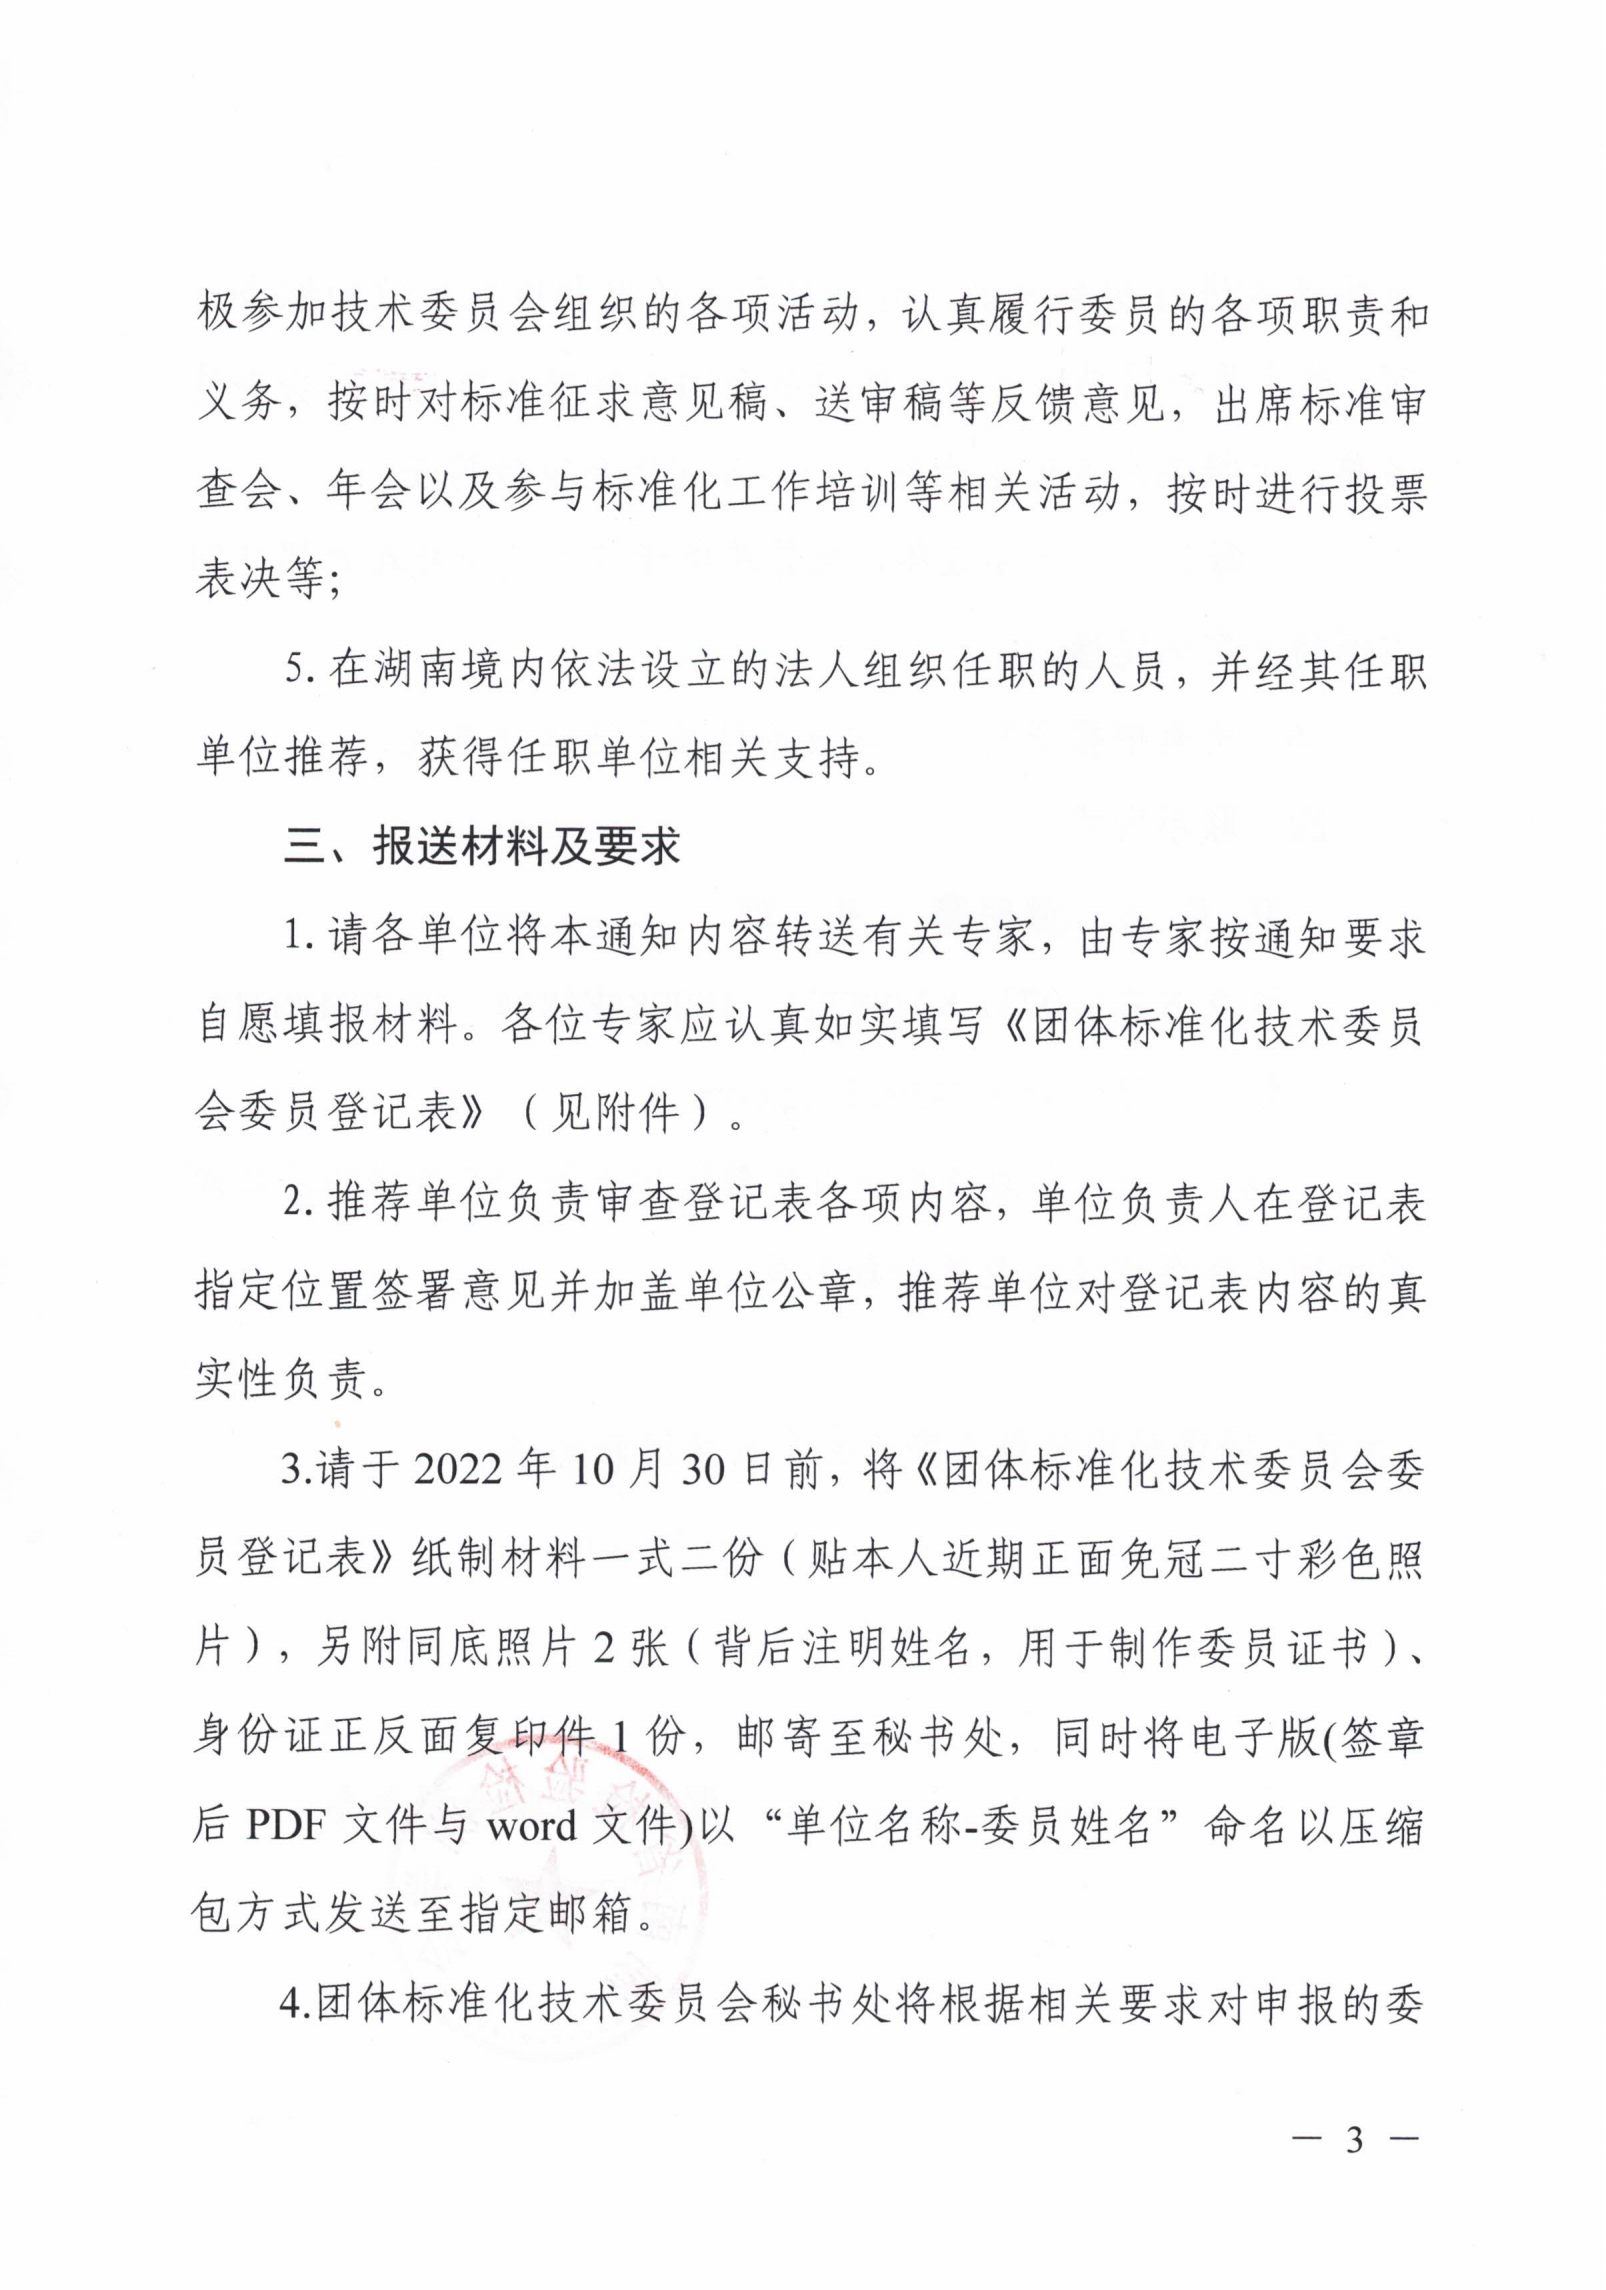 关于征集湖南省检验检测学会团体标准化技术委员会委员的通知_02.png